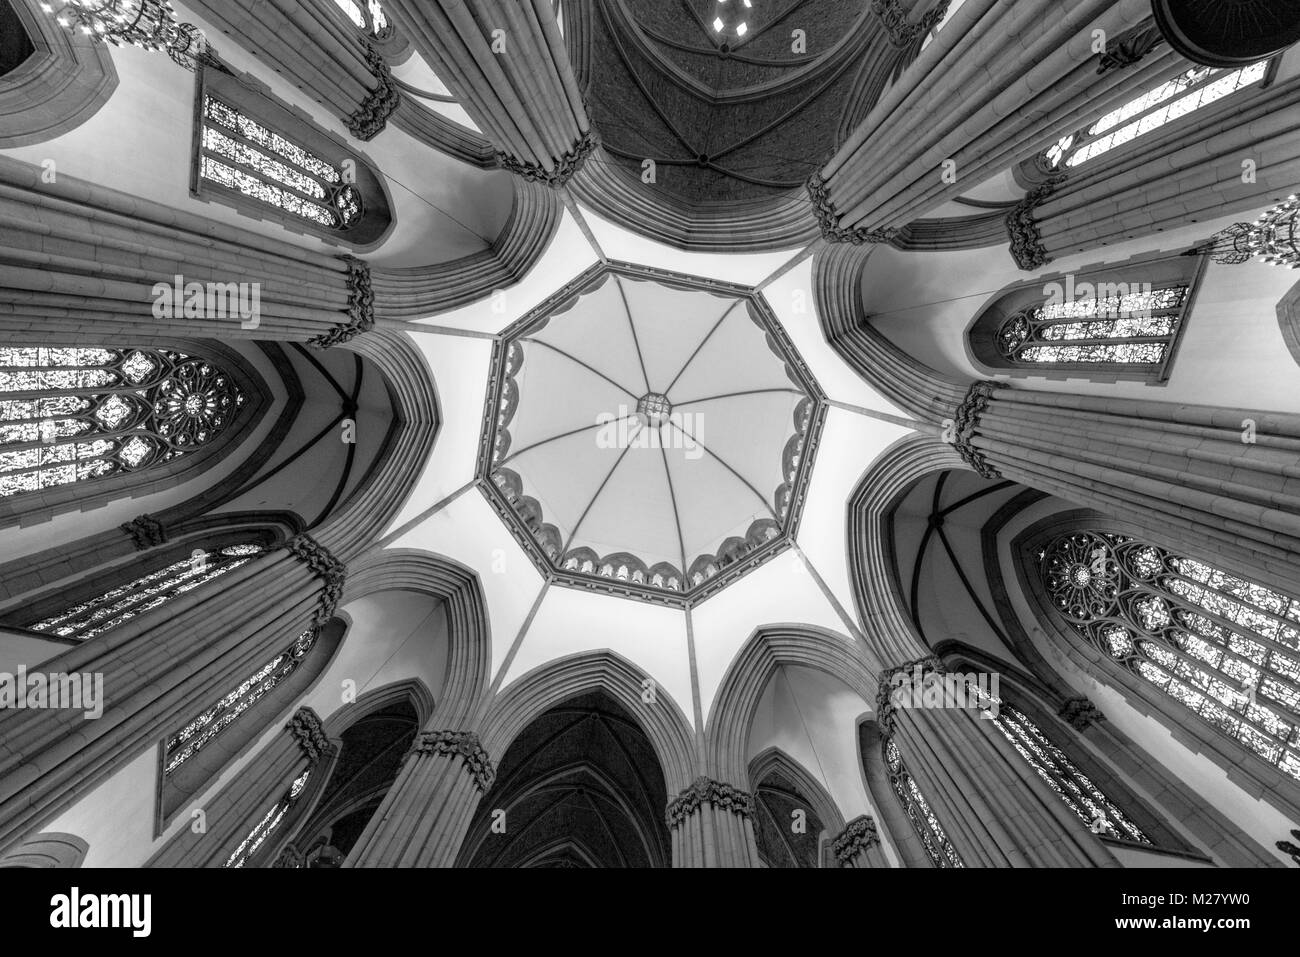 SAO PAULO, BRÉSIL - Février 02 : photo vers le haut de l'architecture gothique de la cathédrale du dôme intérieur se trouve dans le centre de Sao Paulo, Brésil Banque D'Images